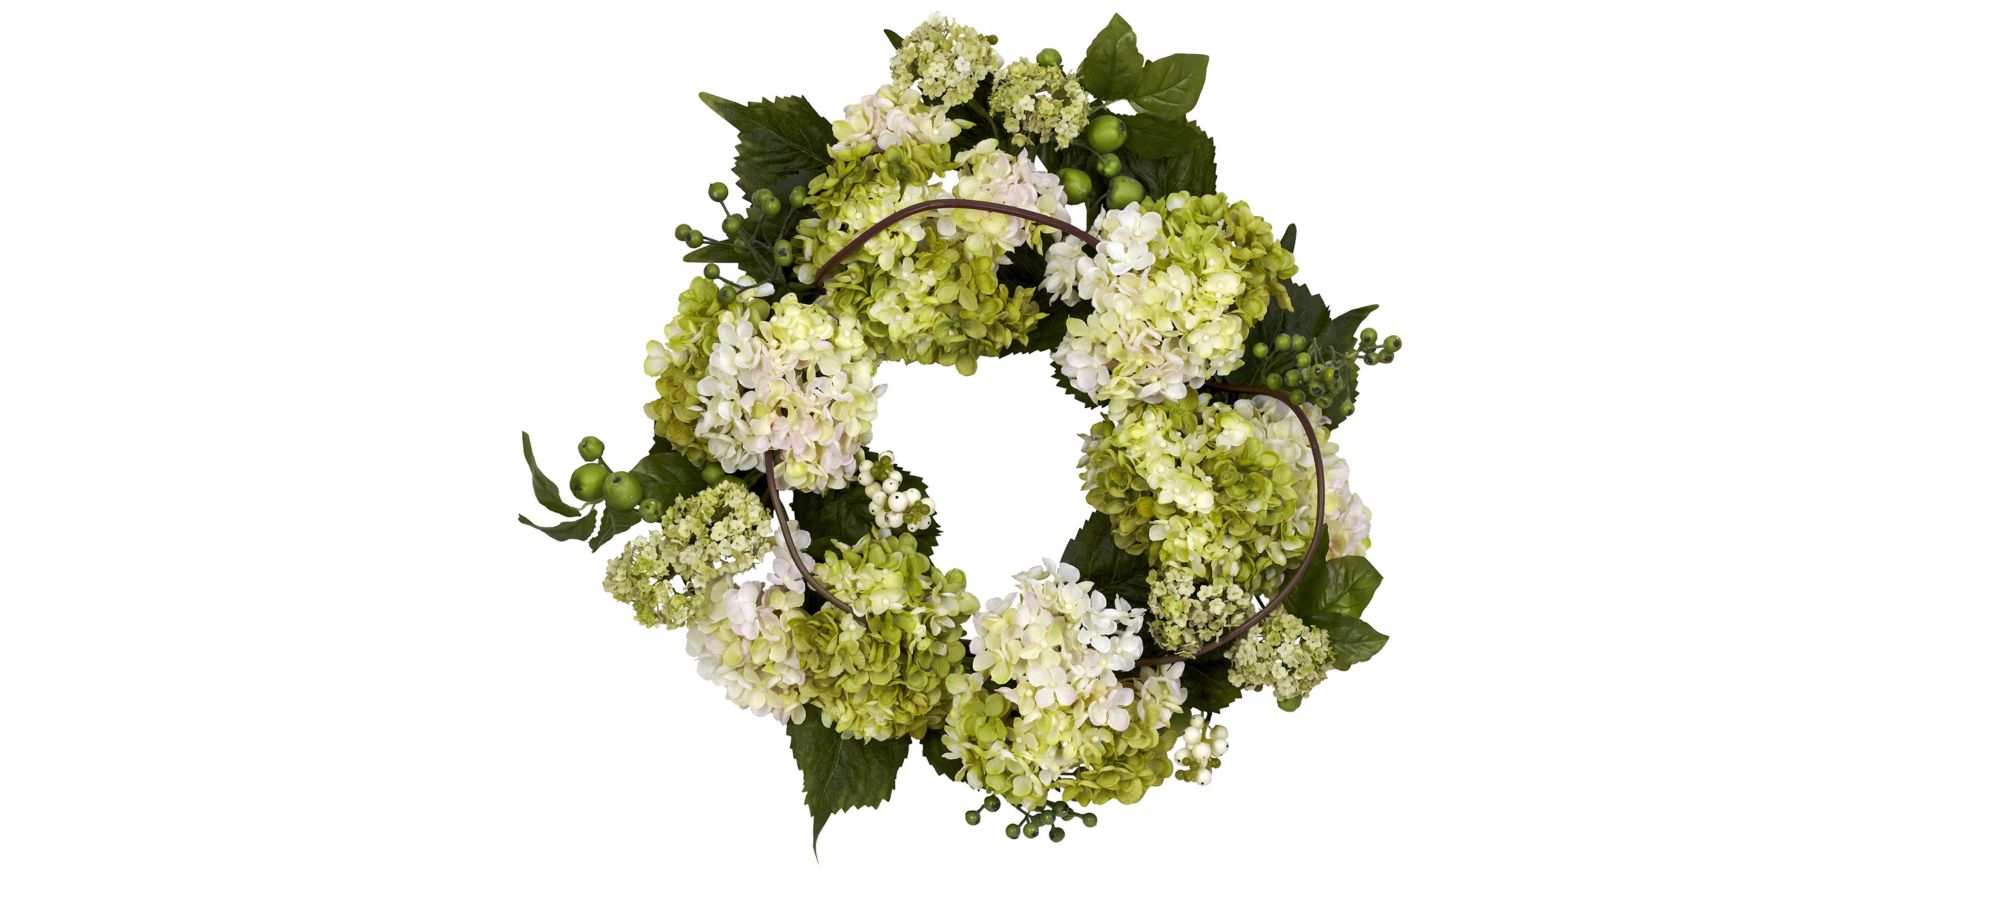 22in. Hydrangea Wreath in Cream/Green by Bellanest